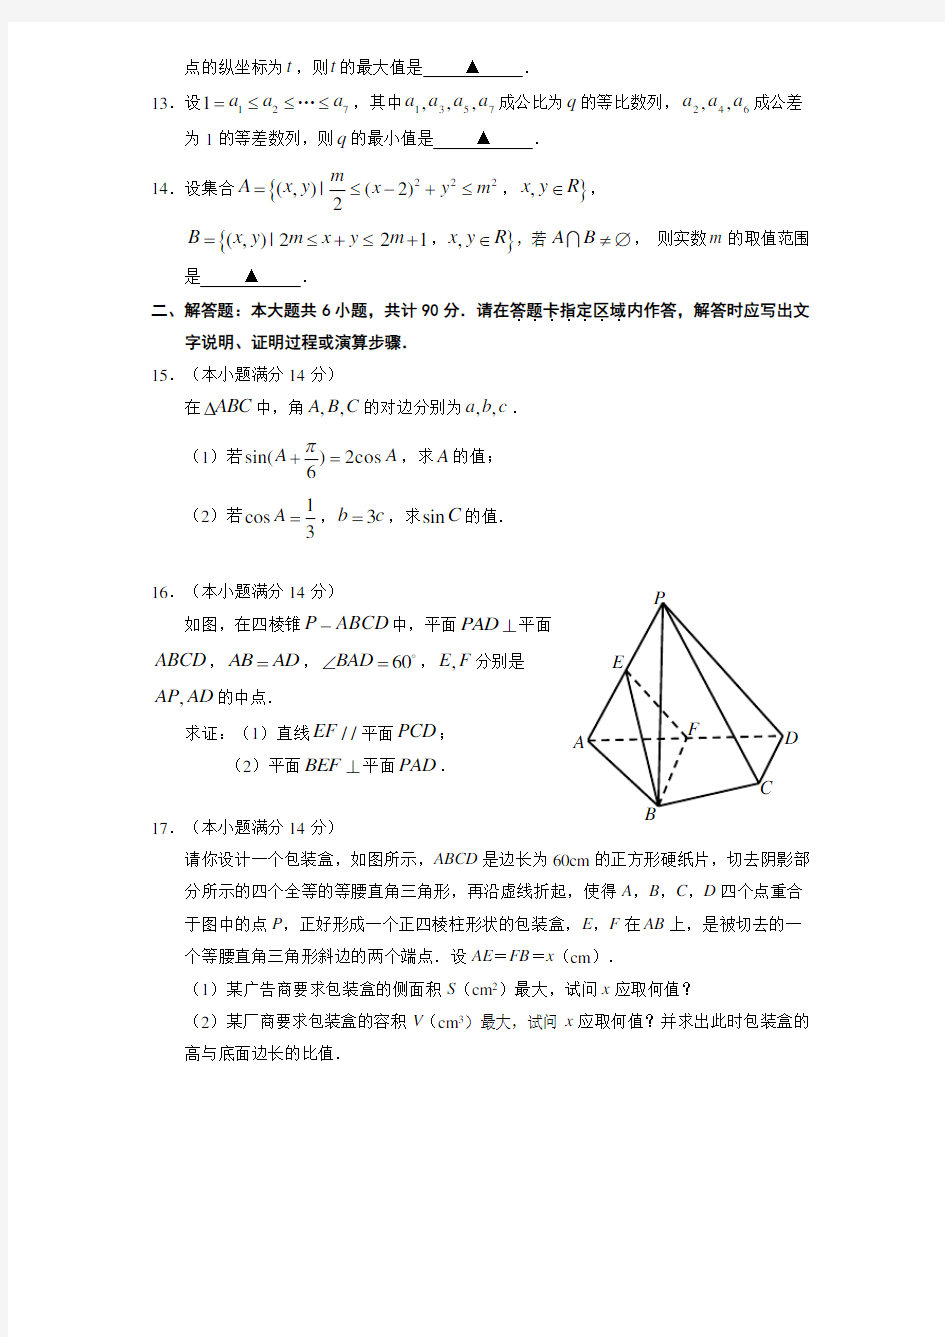 2011年江苏省高考数学试卷及解析